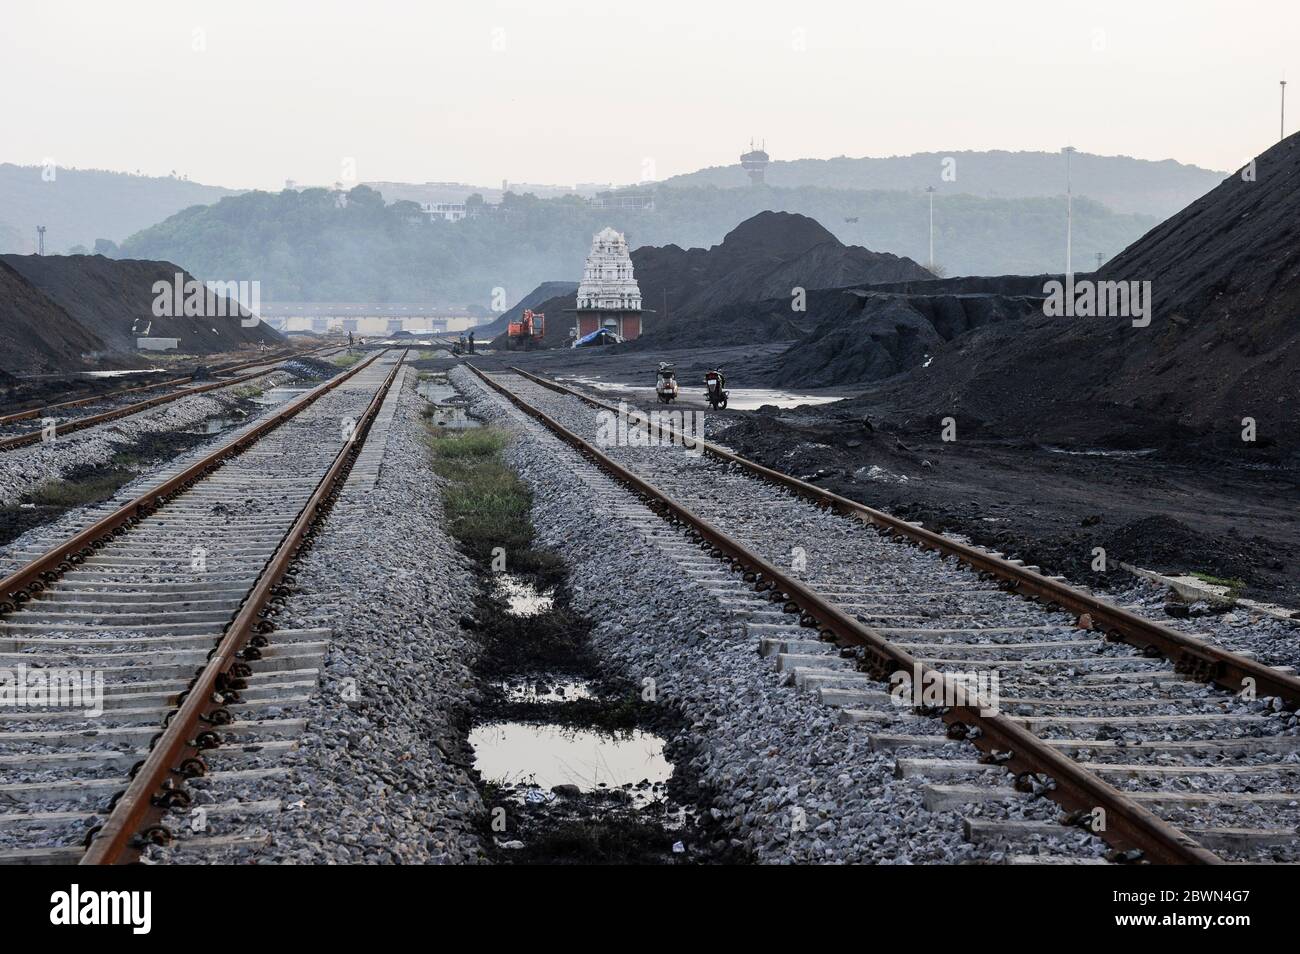 INDE Andhra Pradesh, Visakhapatnam, lieu de chargement du charbon importé d'Australie sur wagon ferroviaire pour le transport vers les usines sidérurgiques, temple hindou smal sur la voie ferrée Banque D'Images